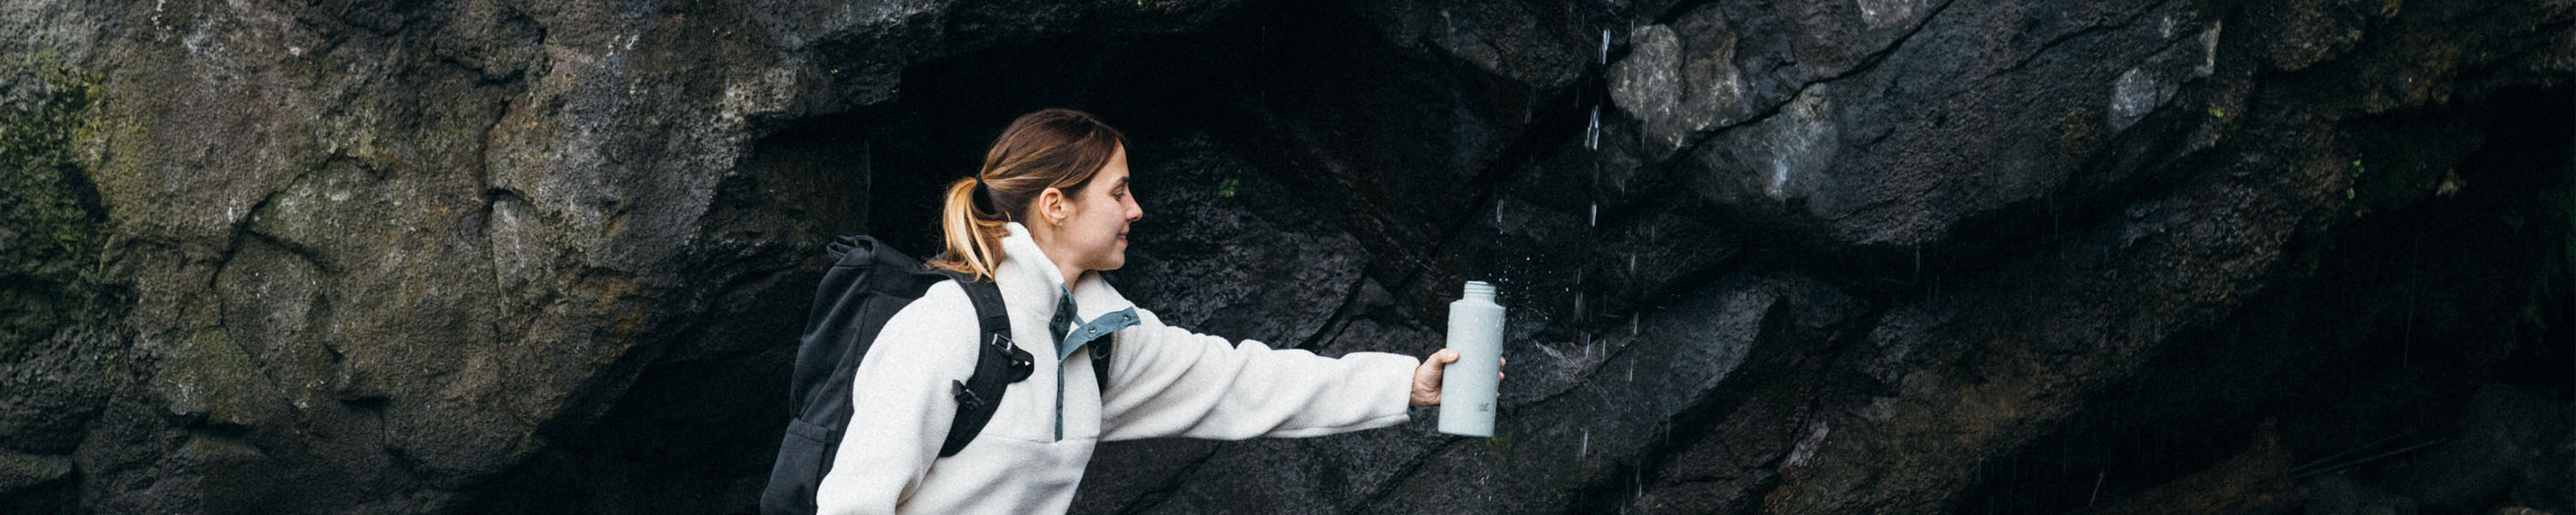 Frau füllt unterwegs ihre SCULPTOR Trinkflasche an einem Wasserfall auf